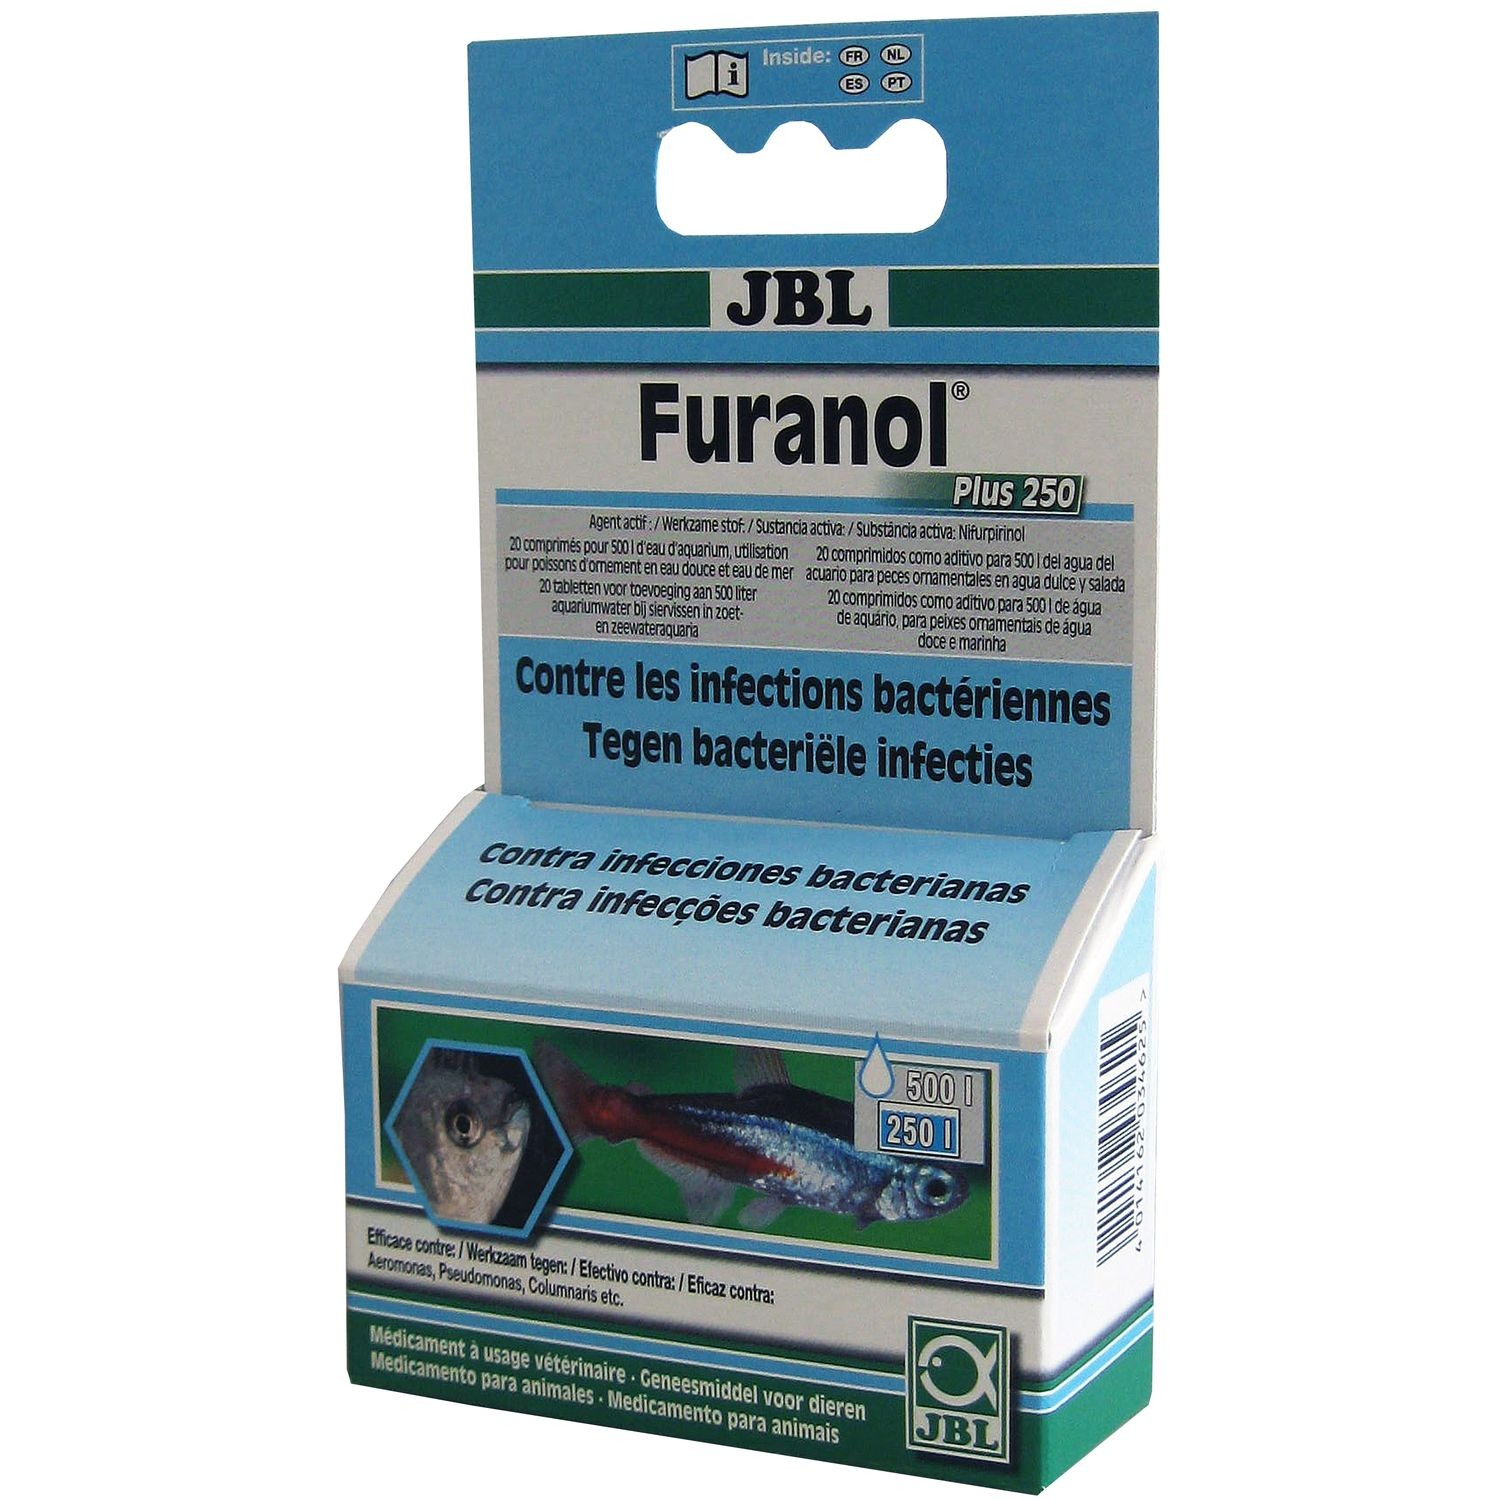 JBL Furanol Plus 250 - contra las infecciones bacterianas internas e externas